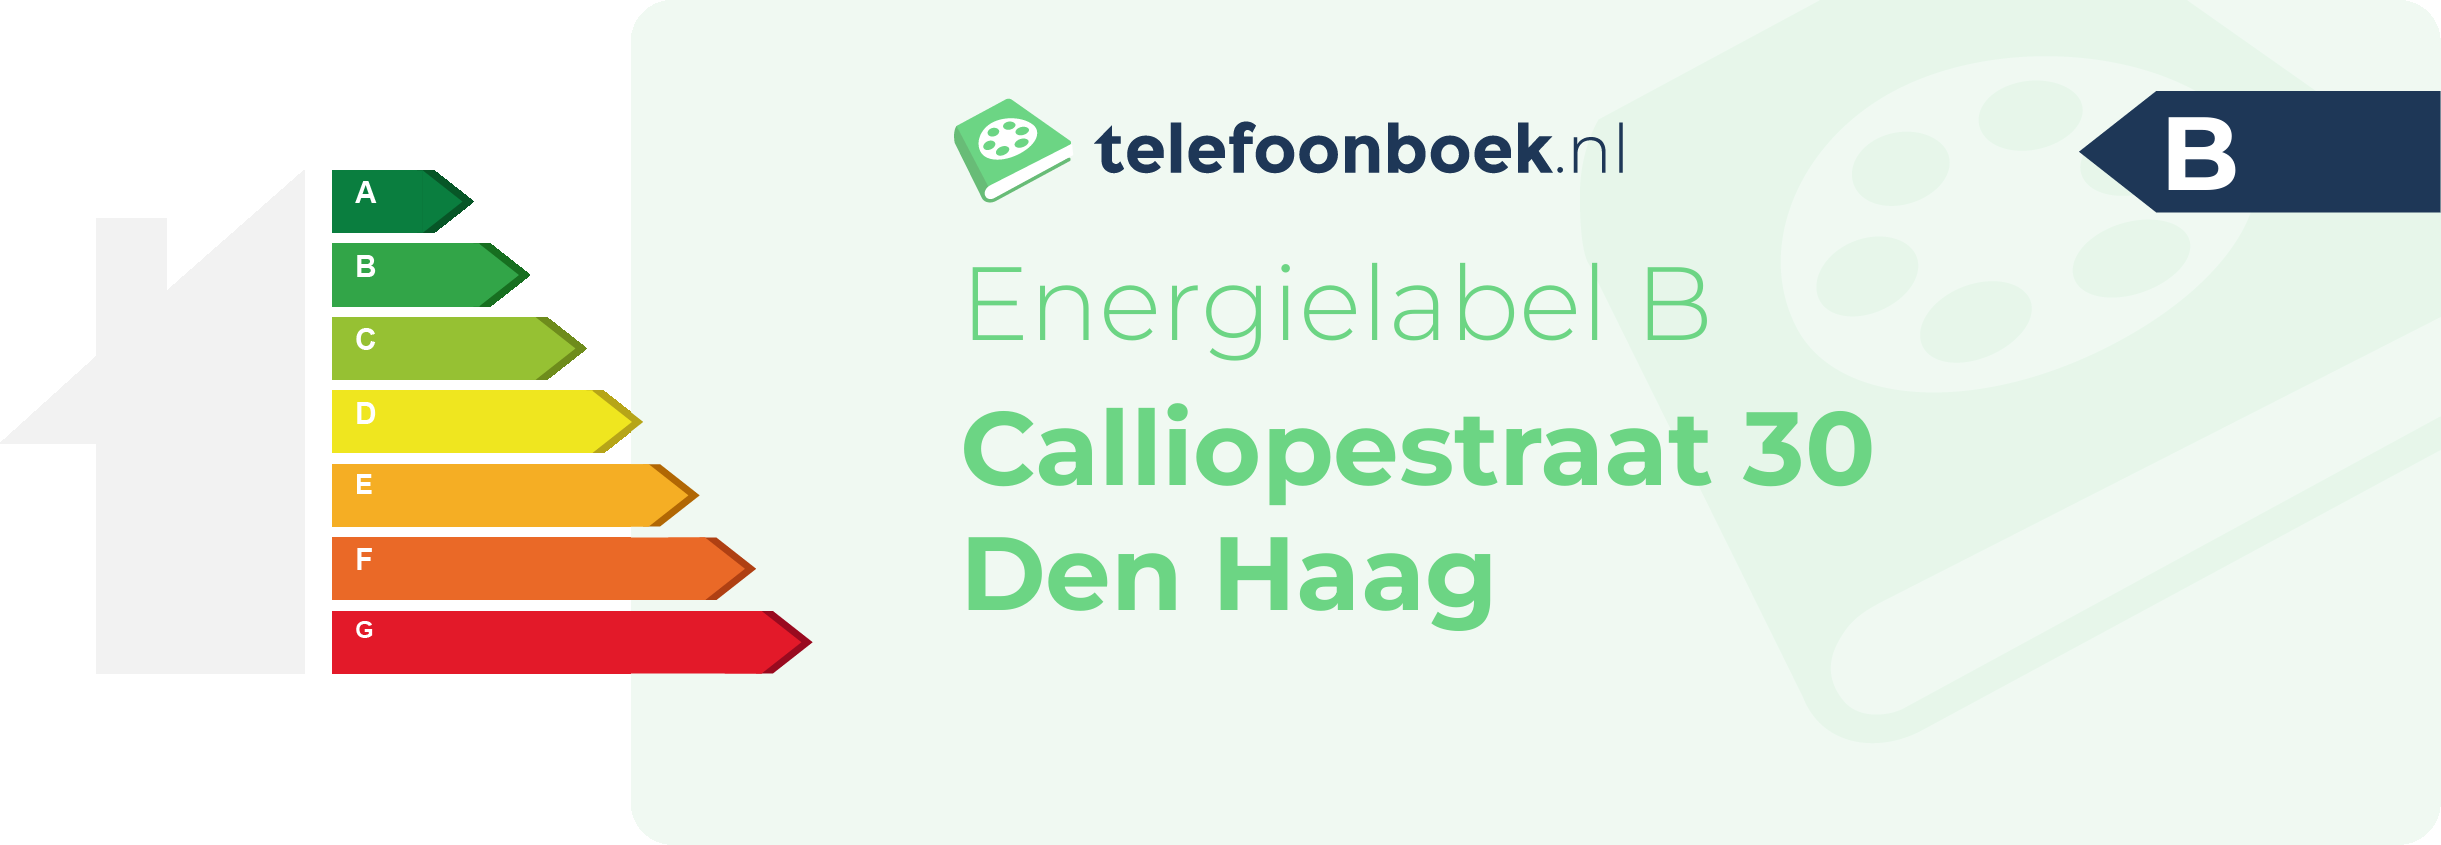 Energielabel Calliopestraat 30 Den Haag